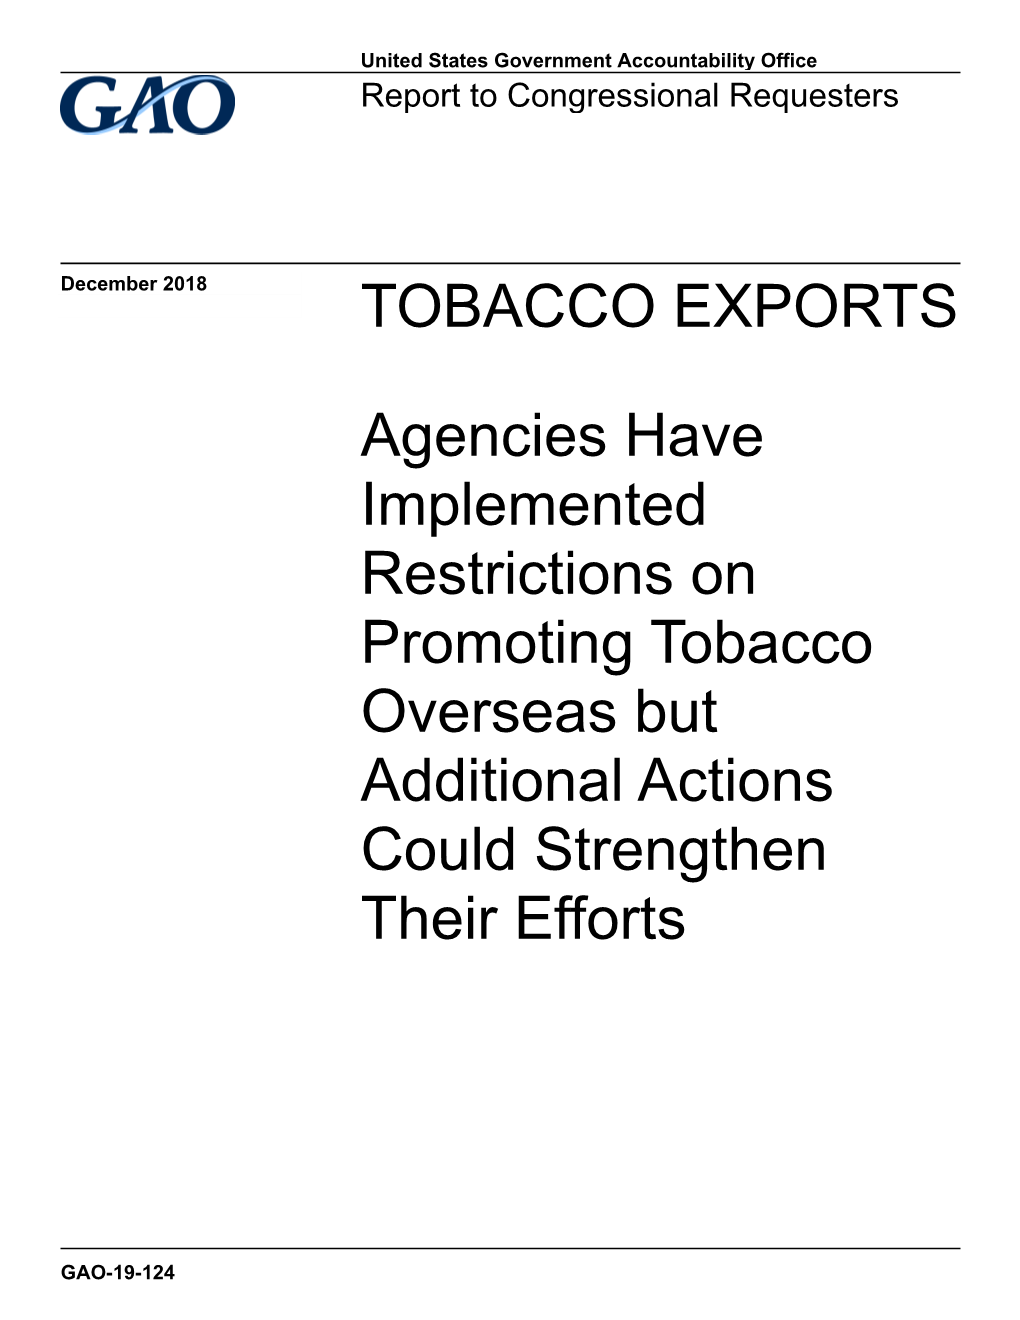 Gao-19-124, Tobacco Exports